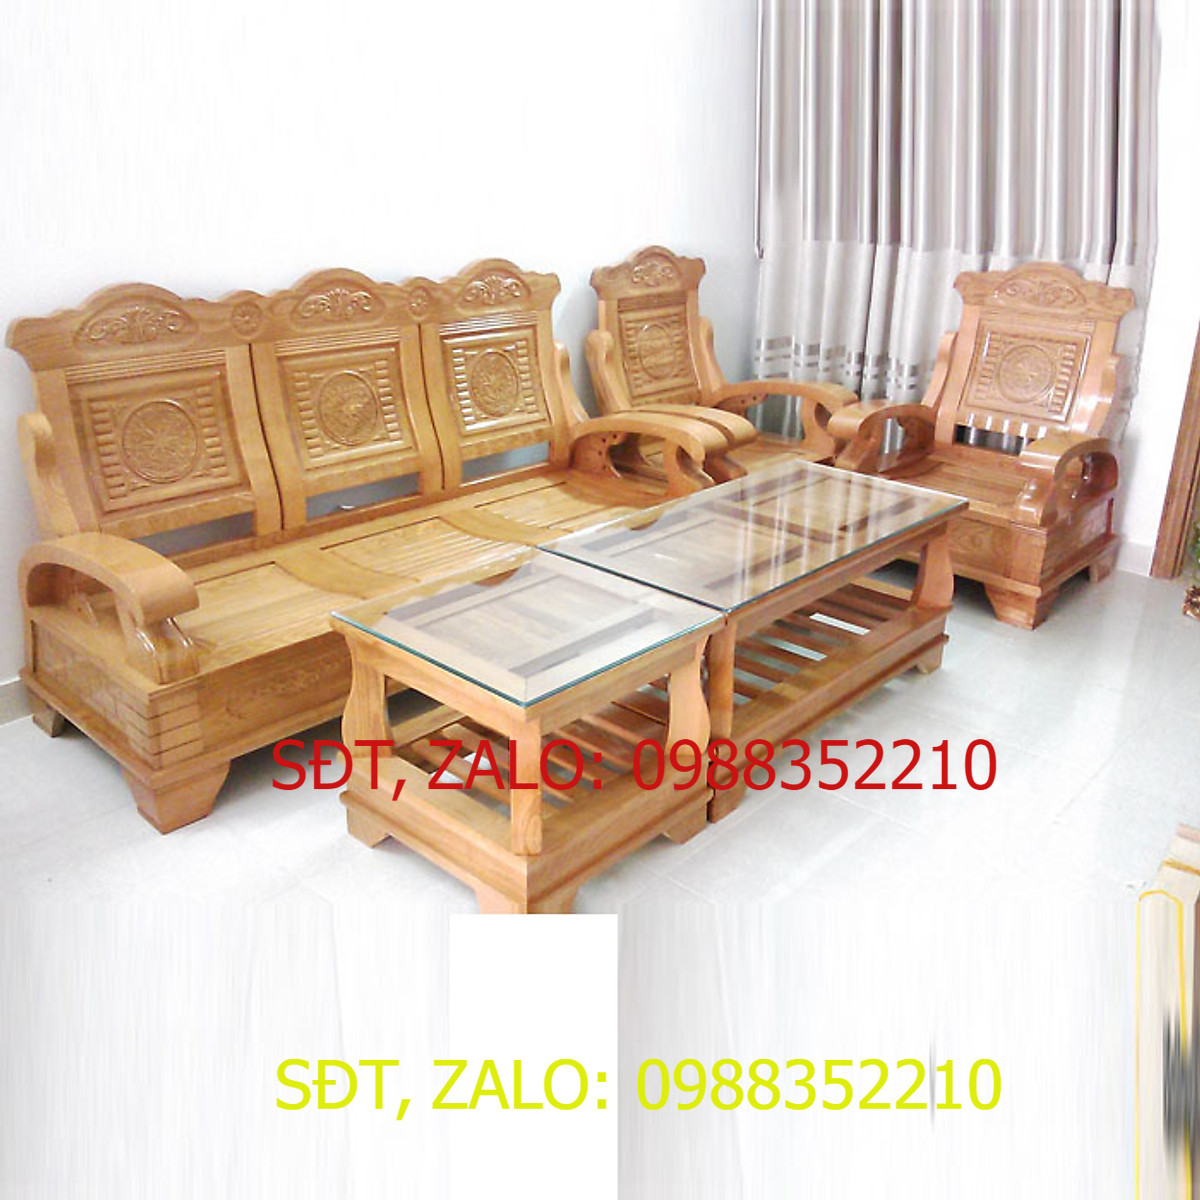 Bộ bàn ghế gỗ phòng khách 5 món gỗ sồi  bộ salong gỗ phòng khách  bàn ghế